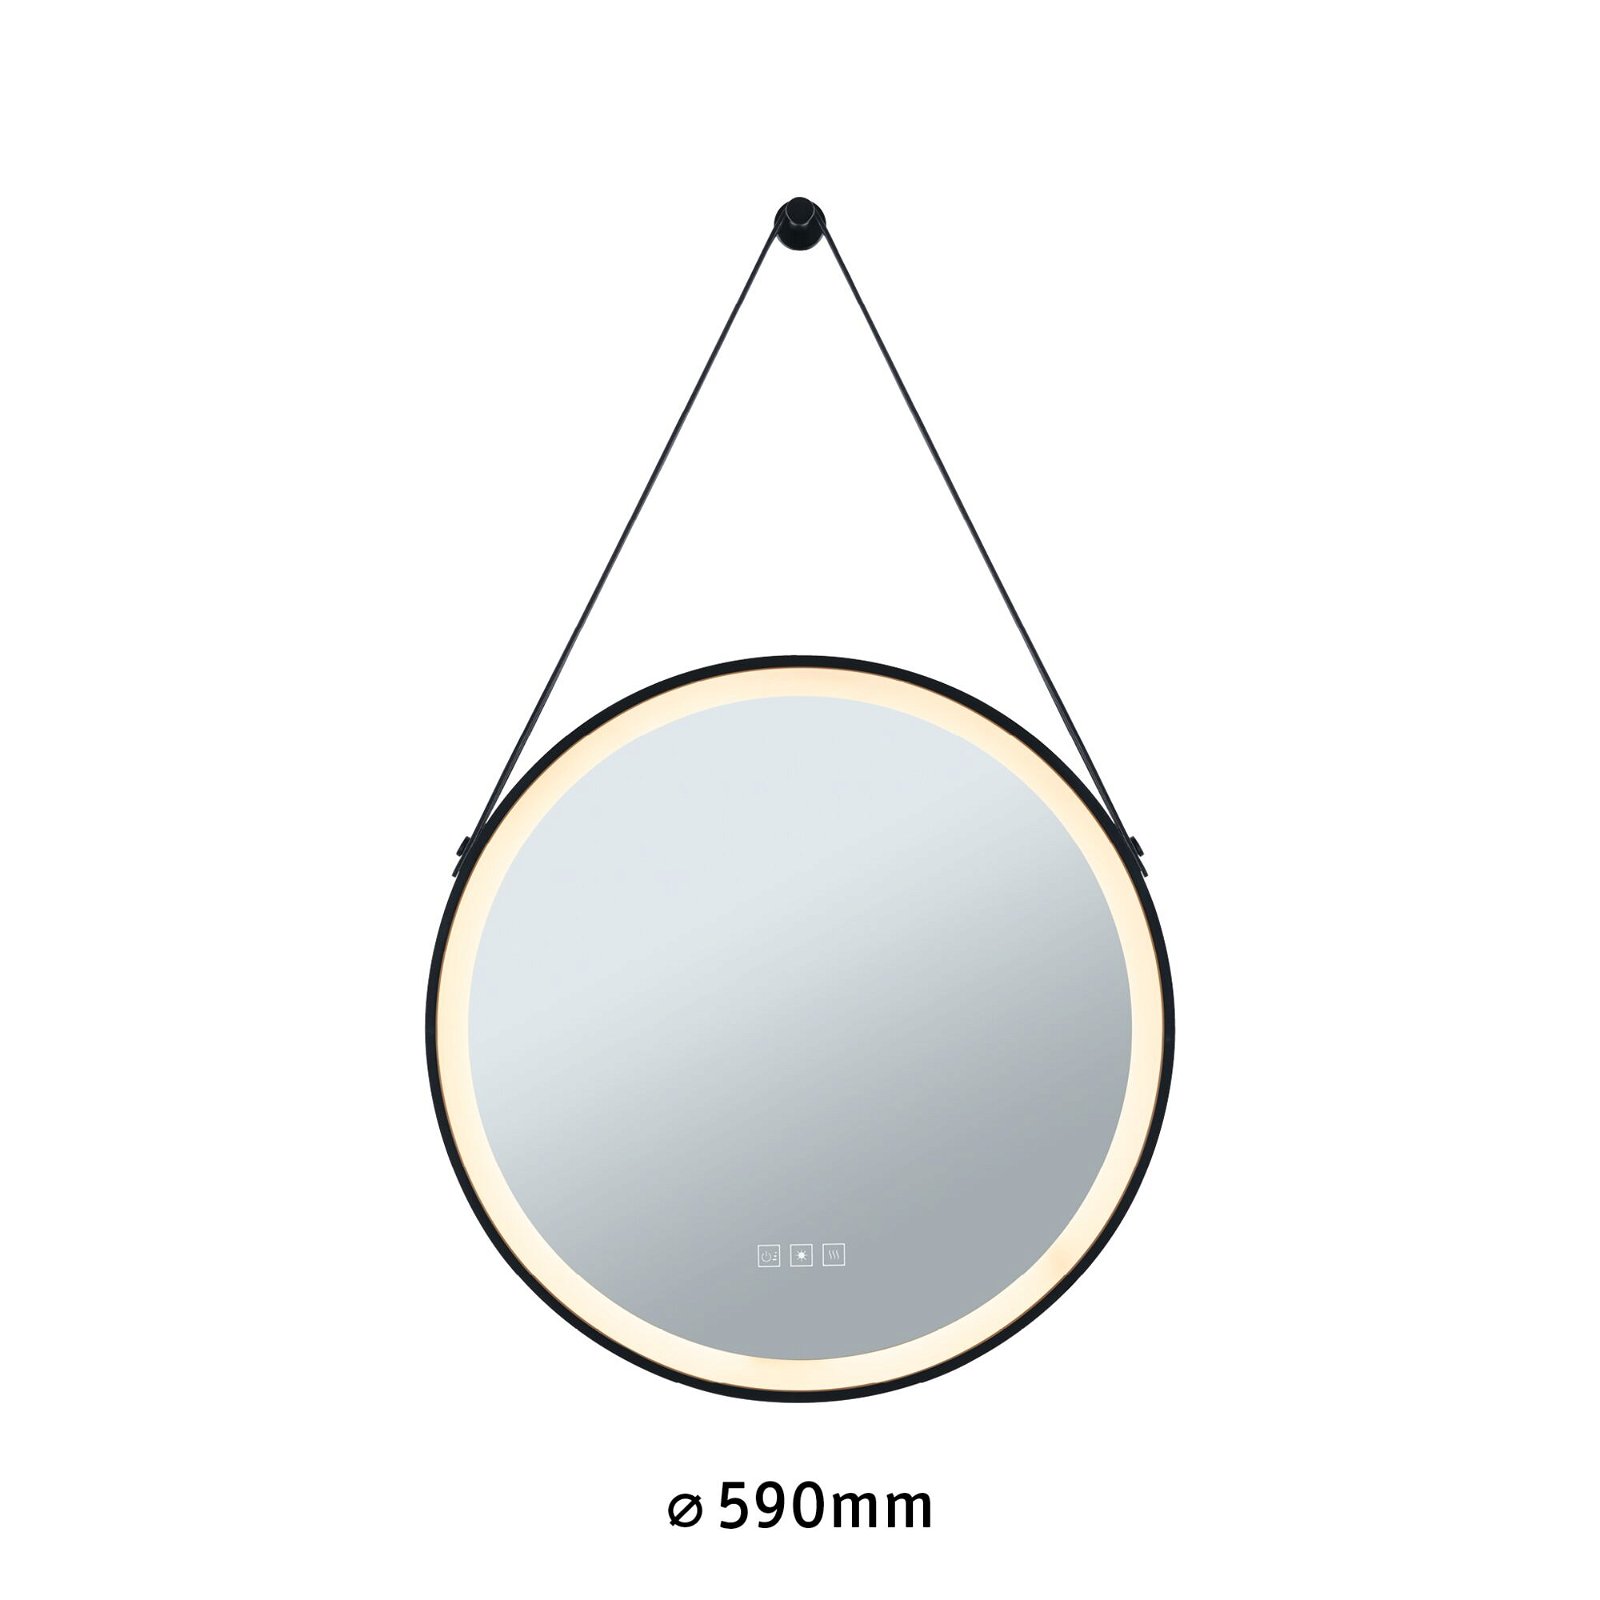 LED-verlichte spiegel Mirra IP44 White Switch 750lm 230V 11,5W dimbaar Zwart/Spiegel